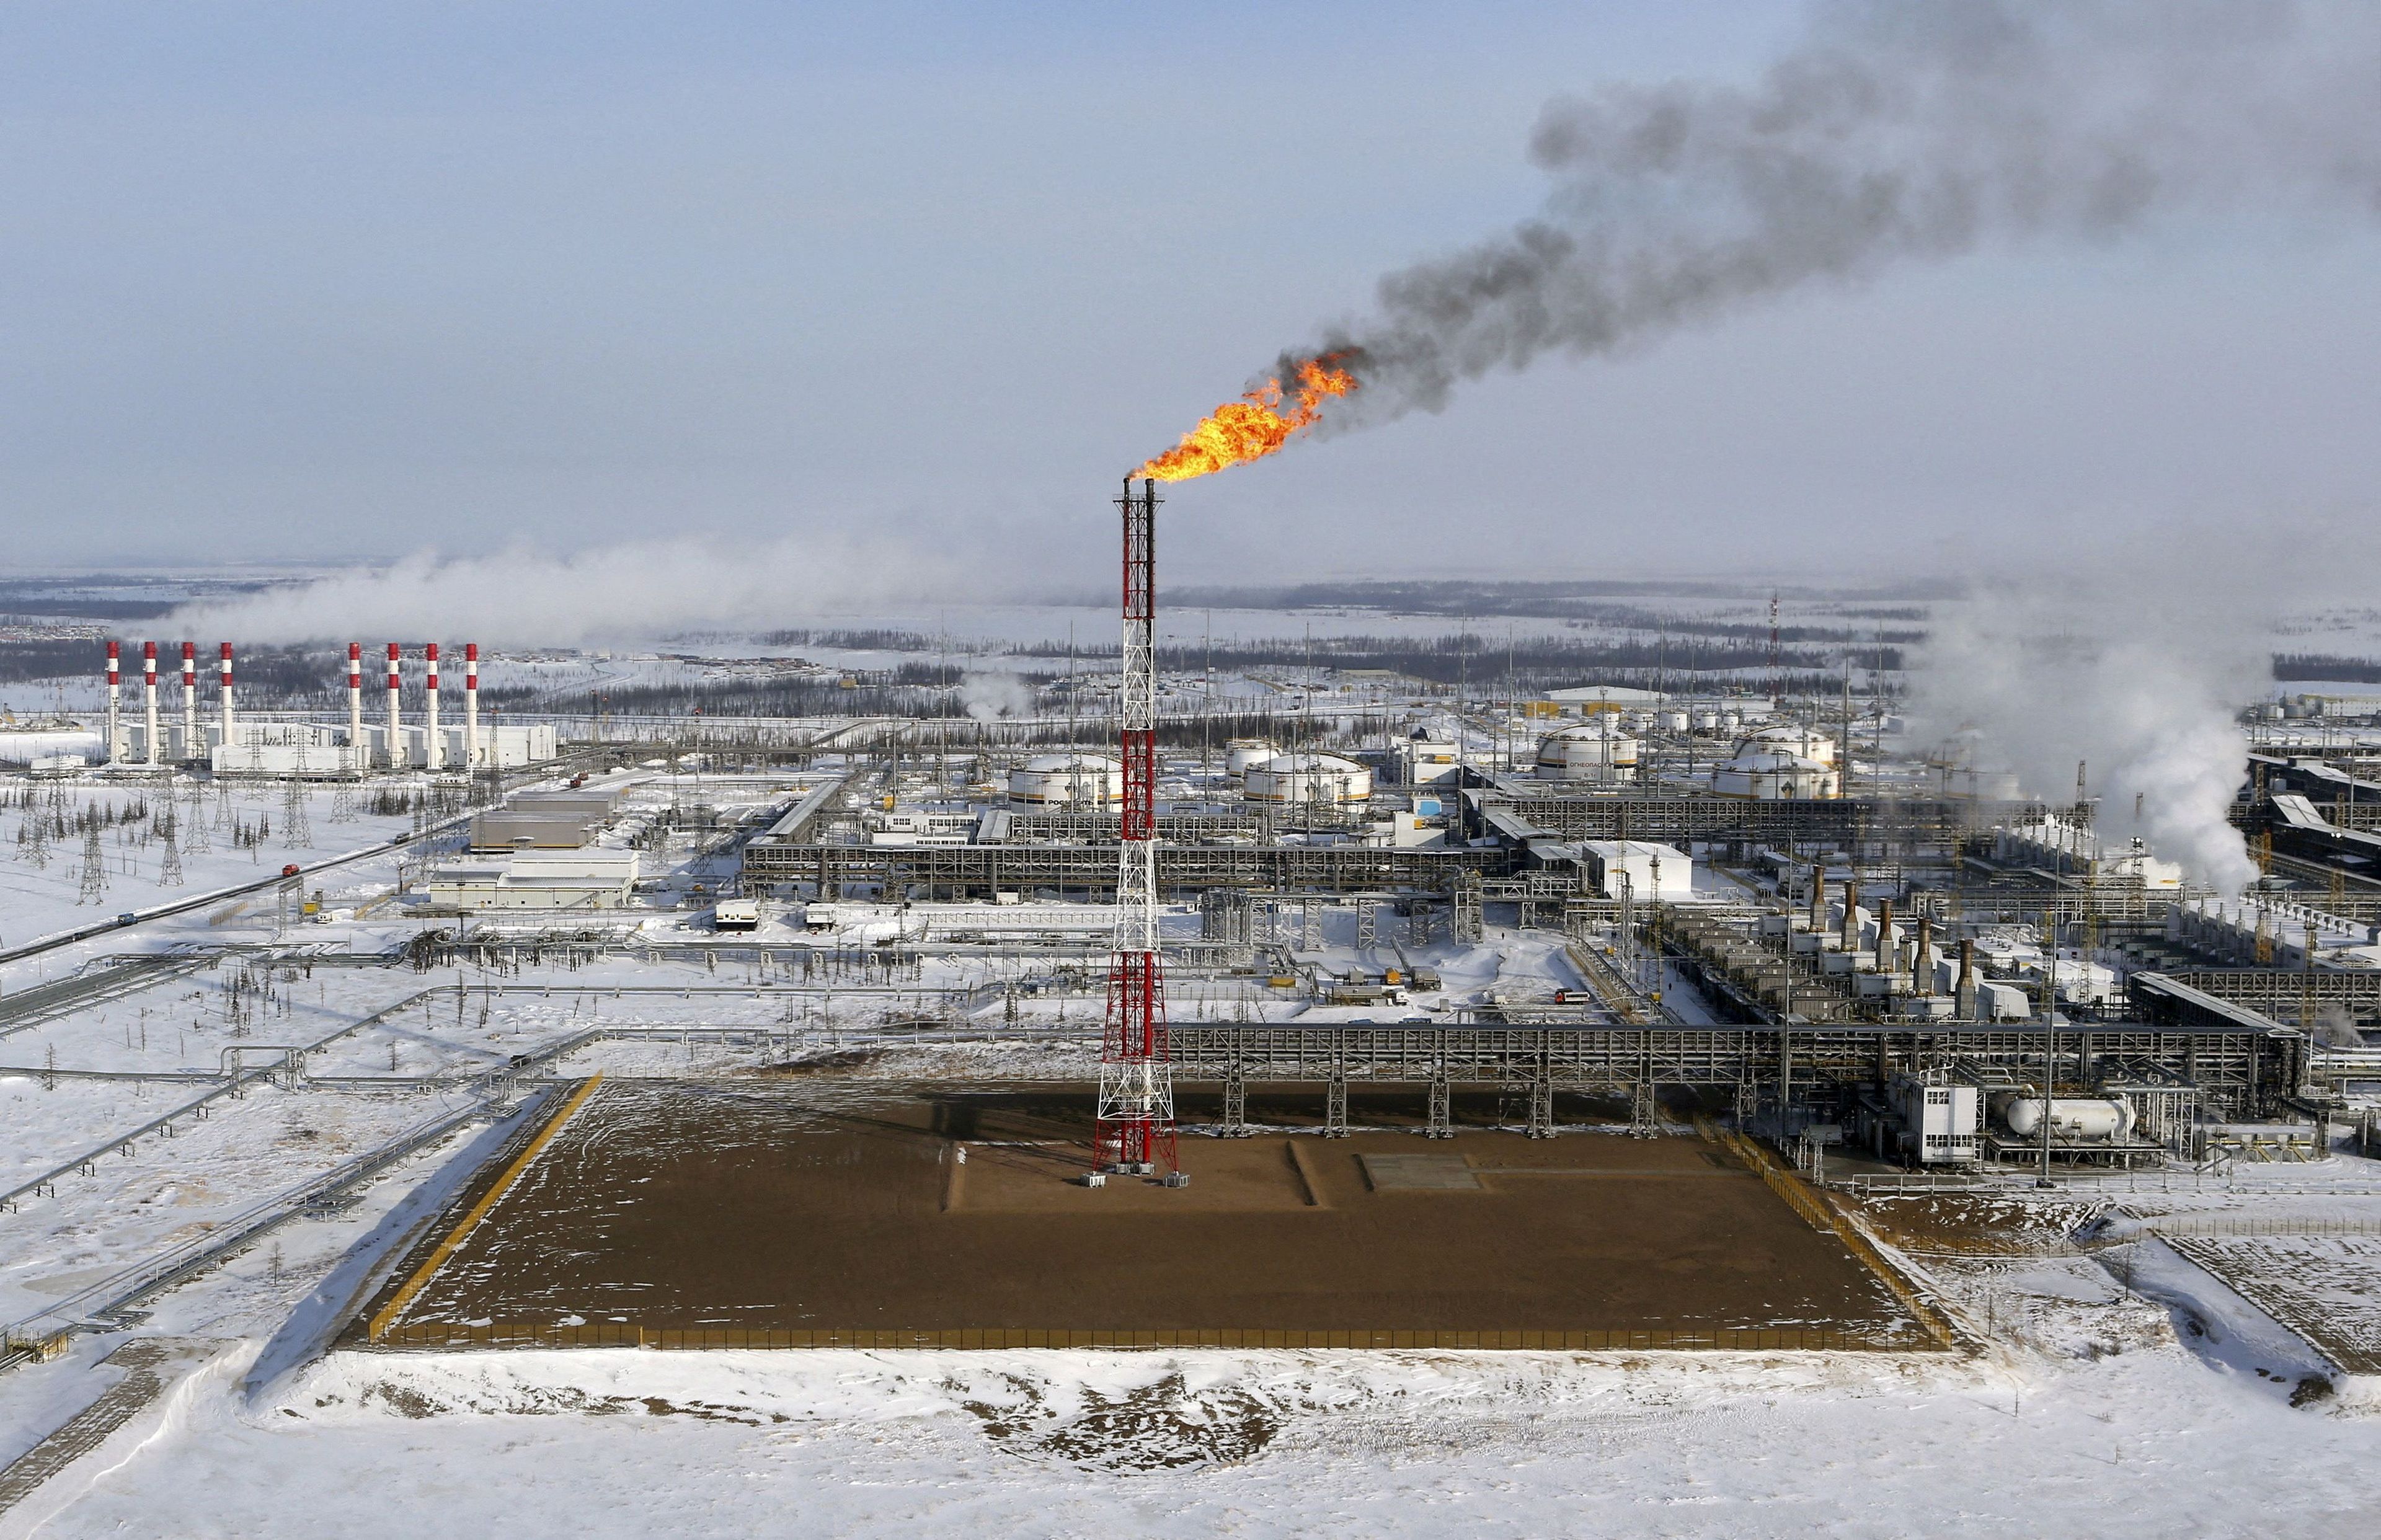 Campo petrolífero Vankorskoye, propiedad de la compañía Rosneft, al norte de la ciudad siberiana de Krasnoyarsk.